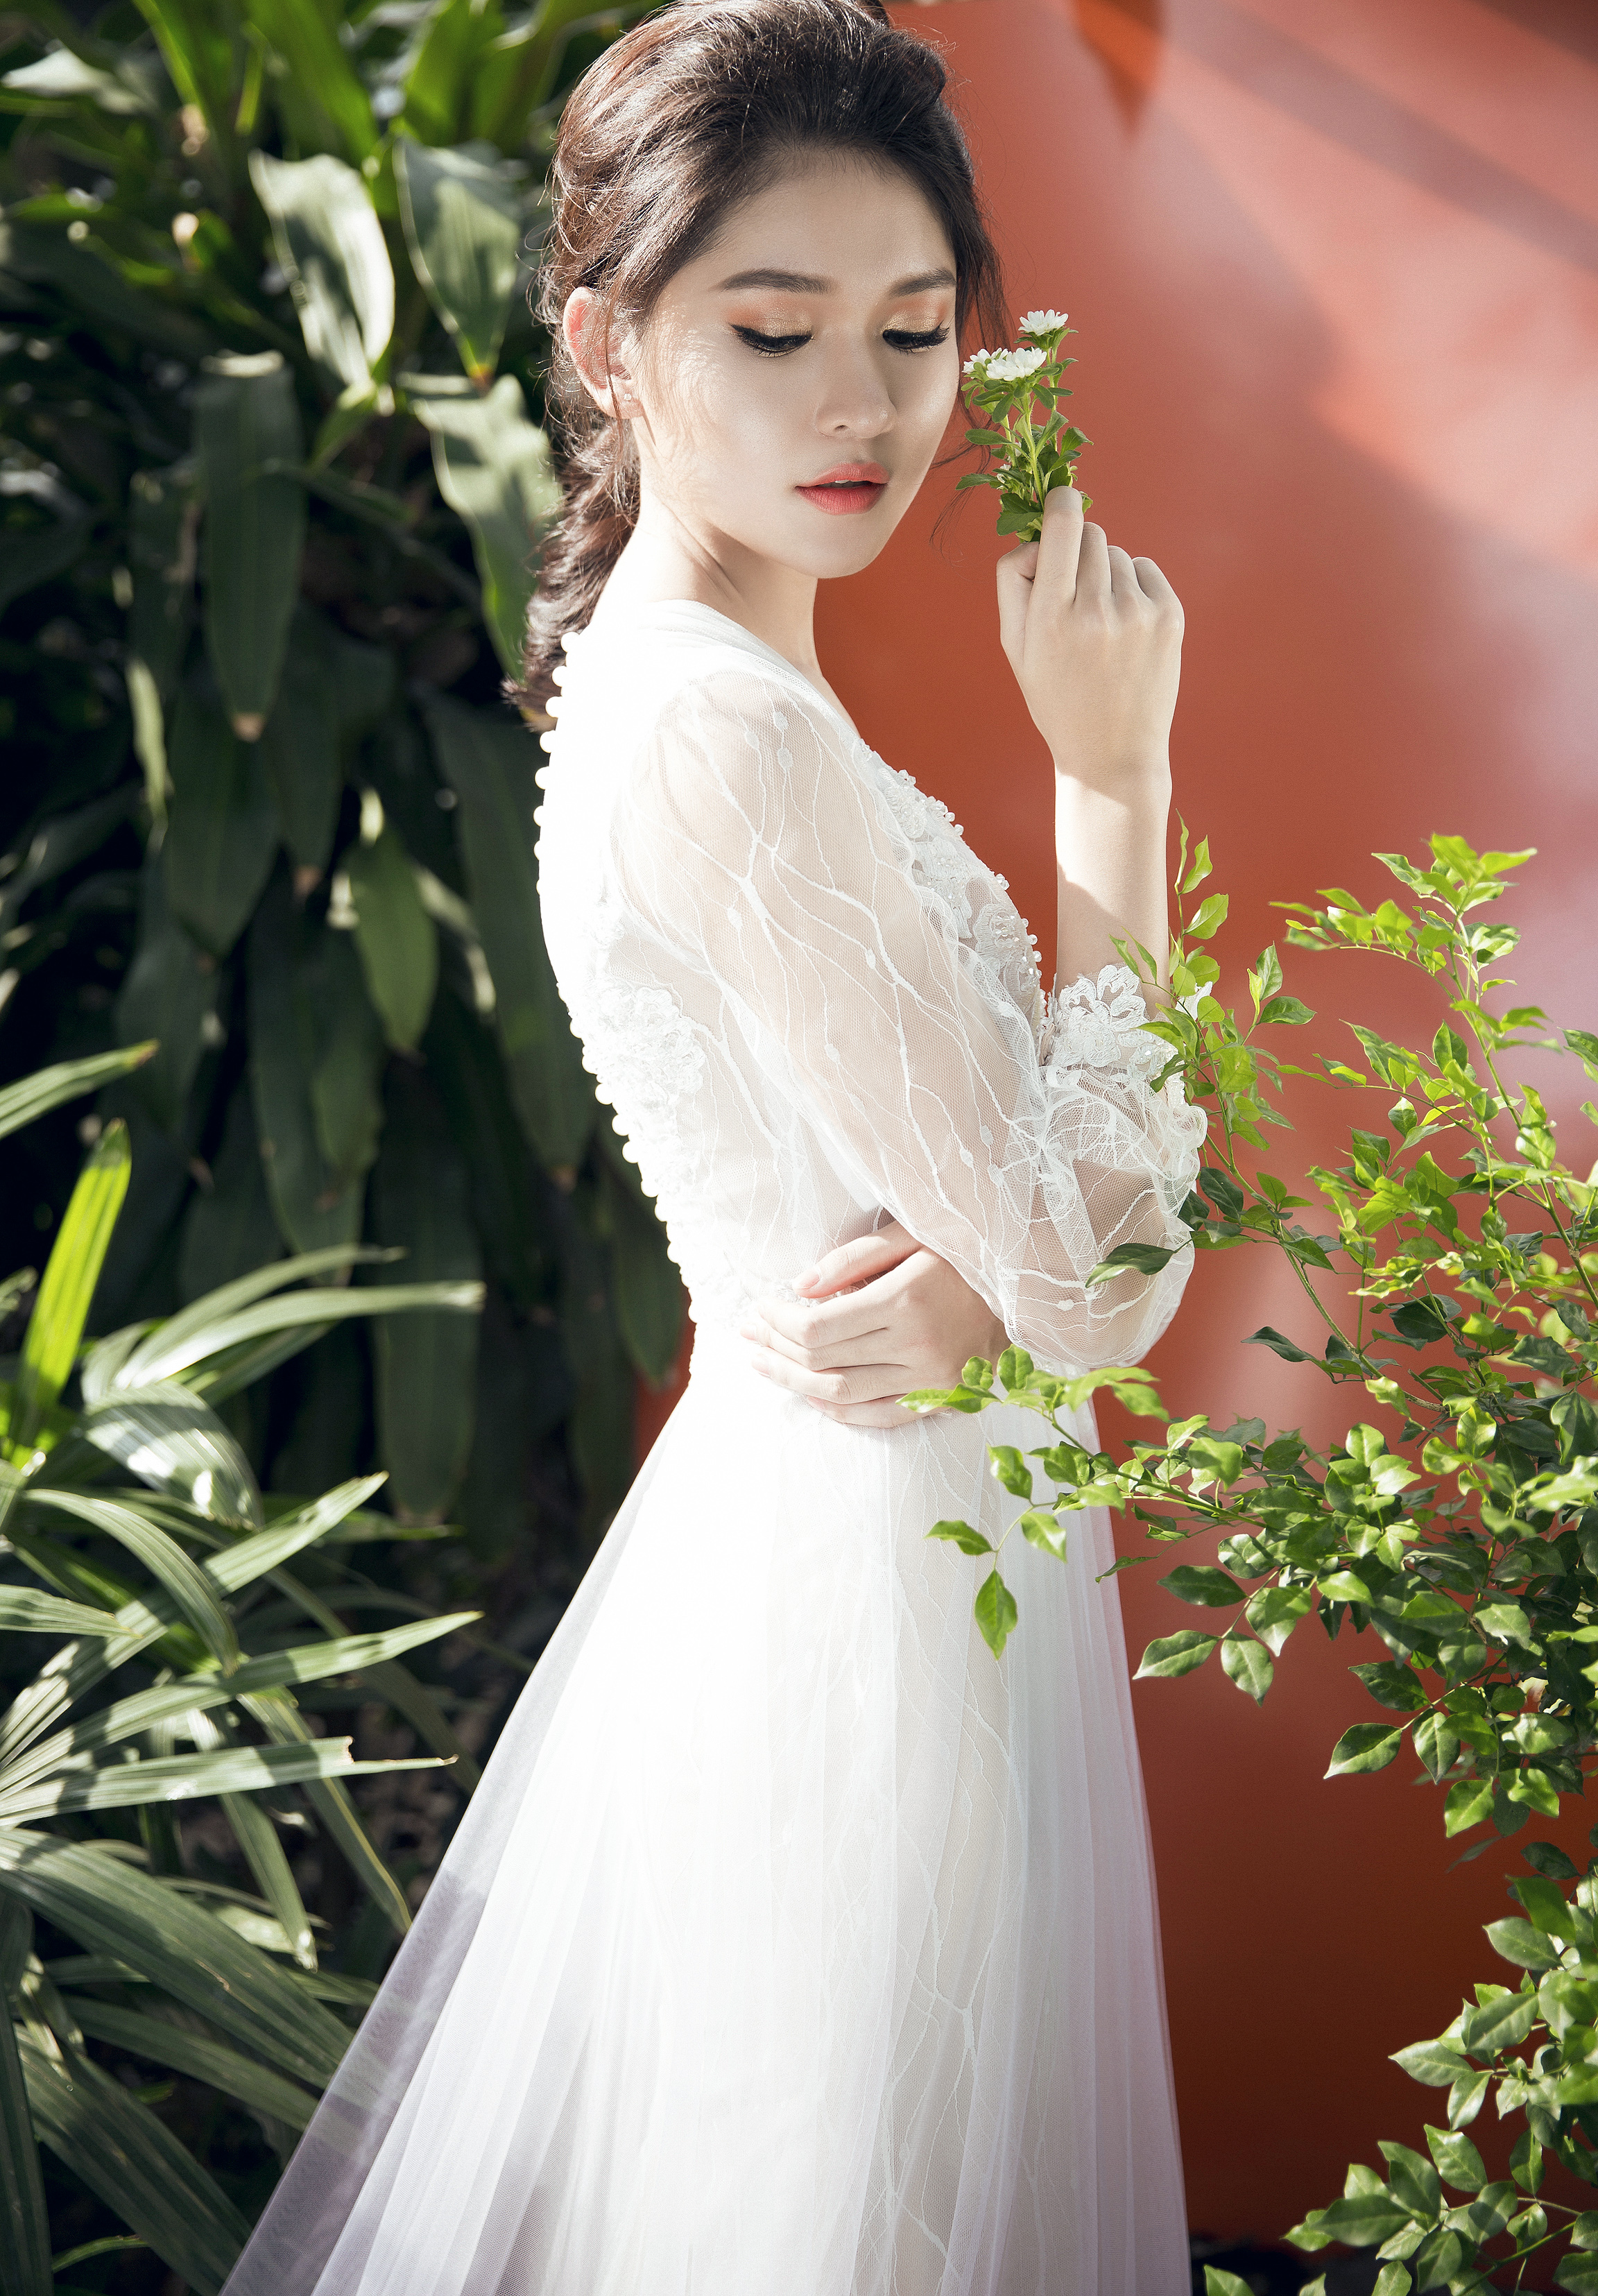 Bạn đang băn khoăn chọn cho mình một chiếc váy cưới hoàn hảo? Hãy cùng Marry tham khảo một số mẫu váy cưới thật đẹp nhé!